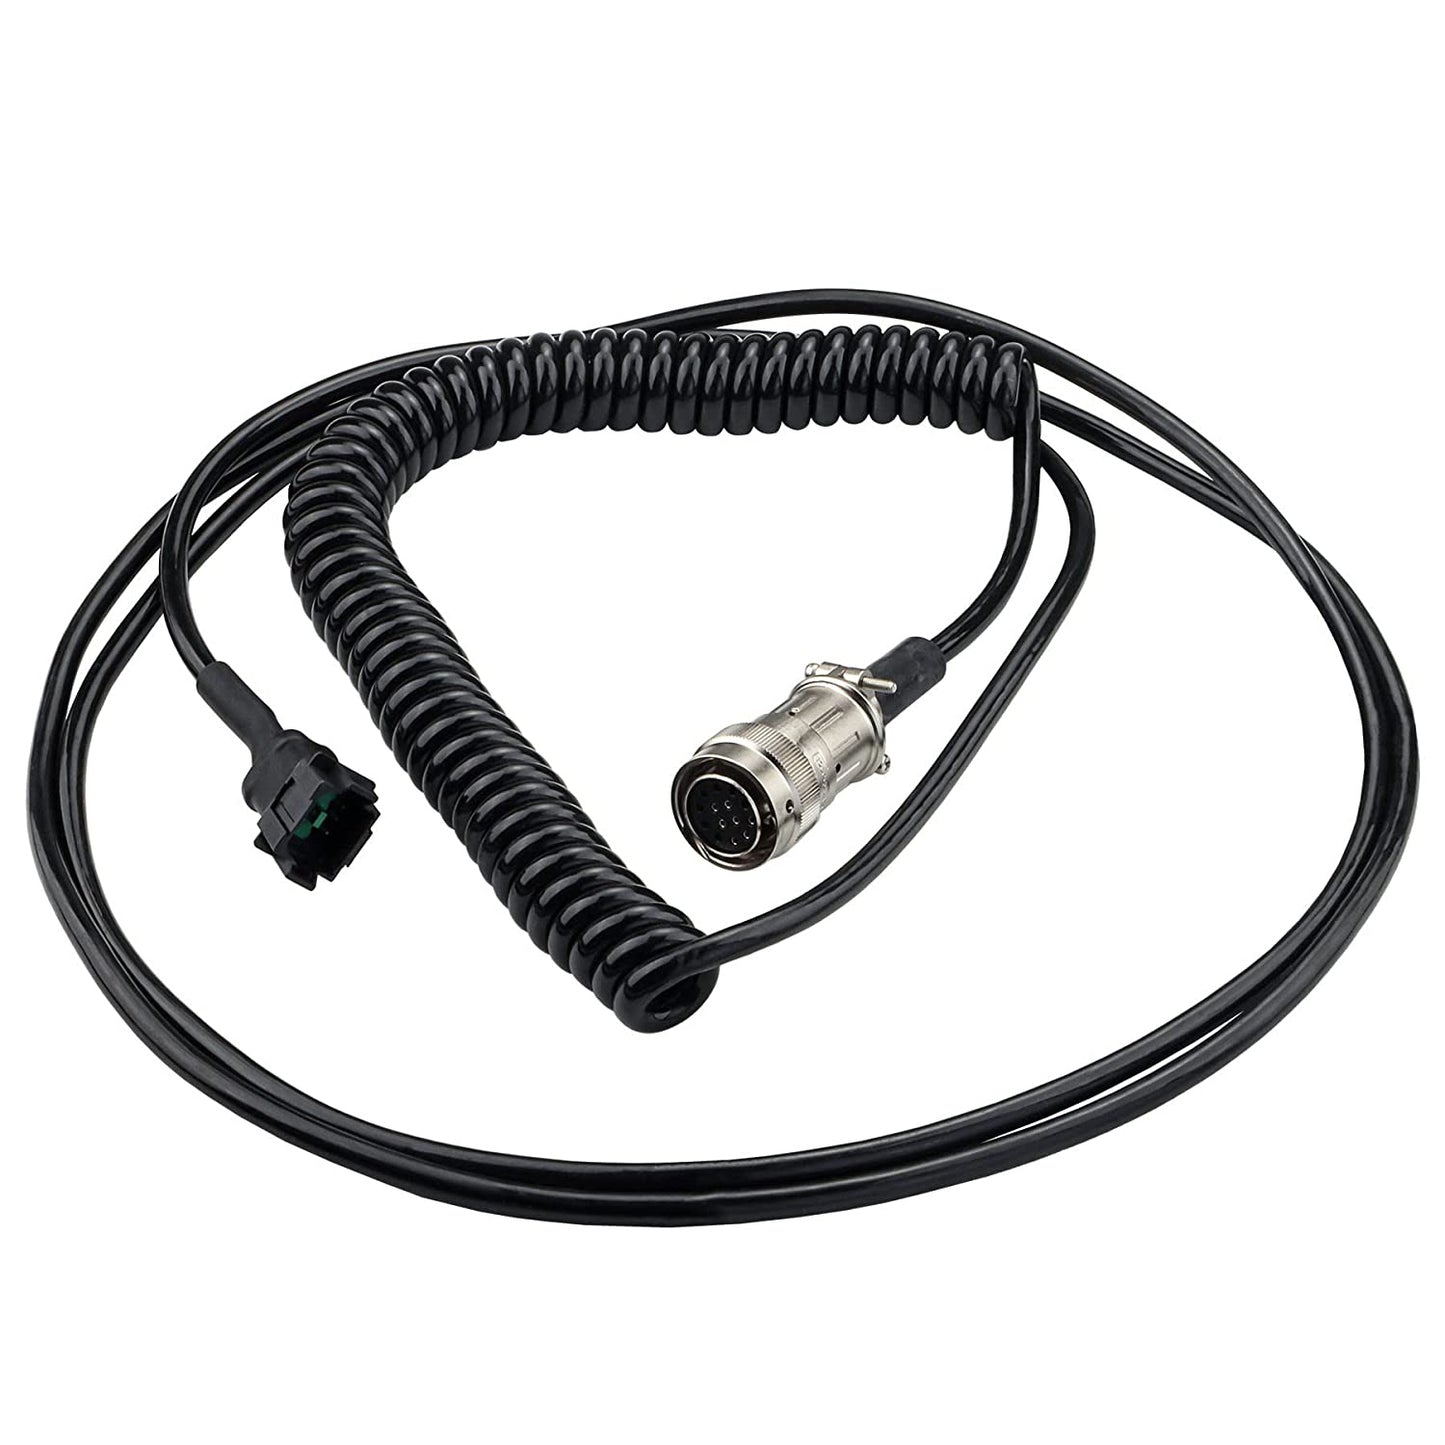 New 1001096707 Cable Harness Compatible with JLG 2630ES 2646ES 3246ES 1230ES 2032ES 2632ES 1930ES 2030ES